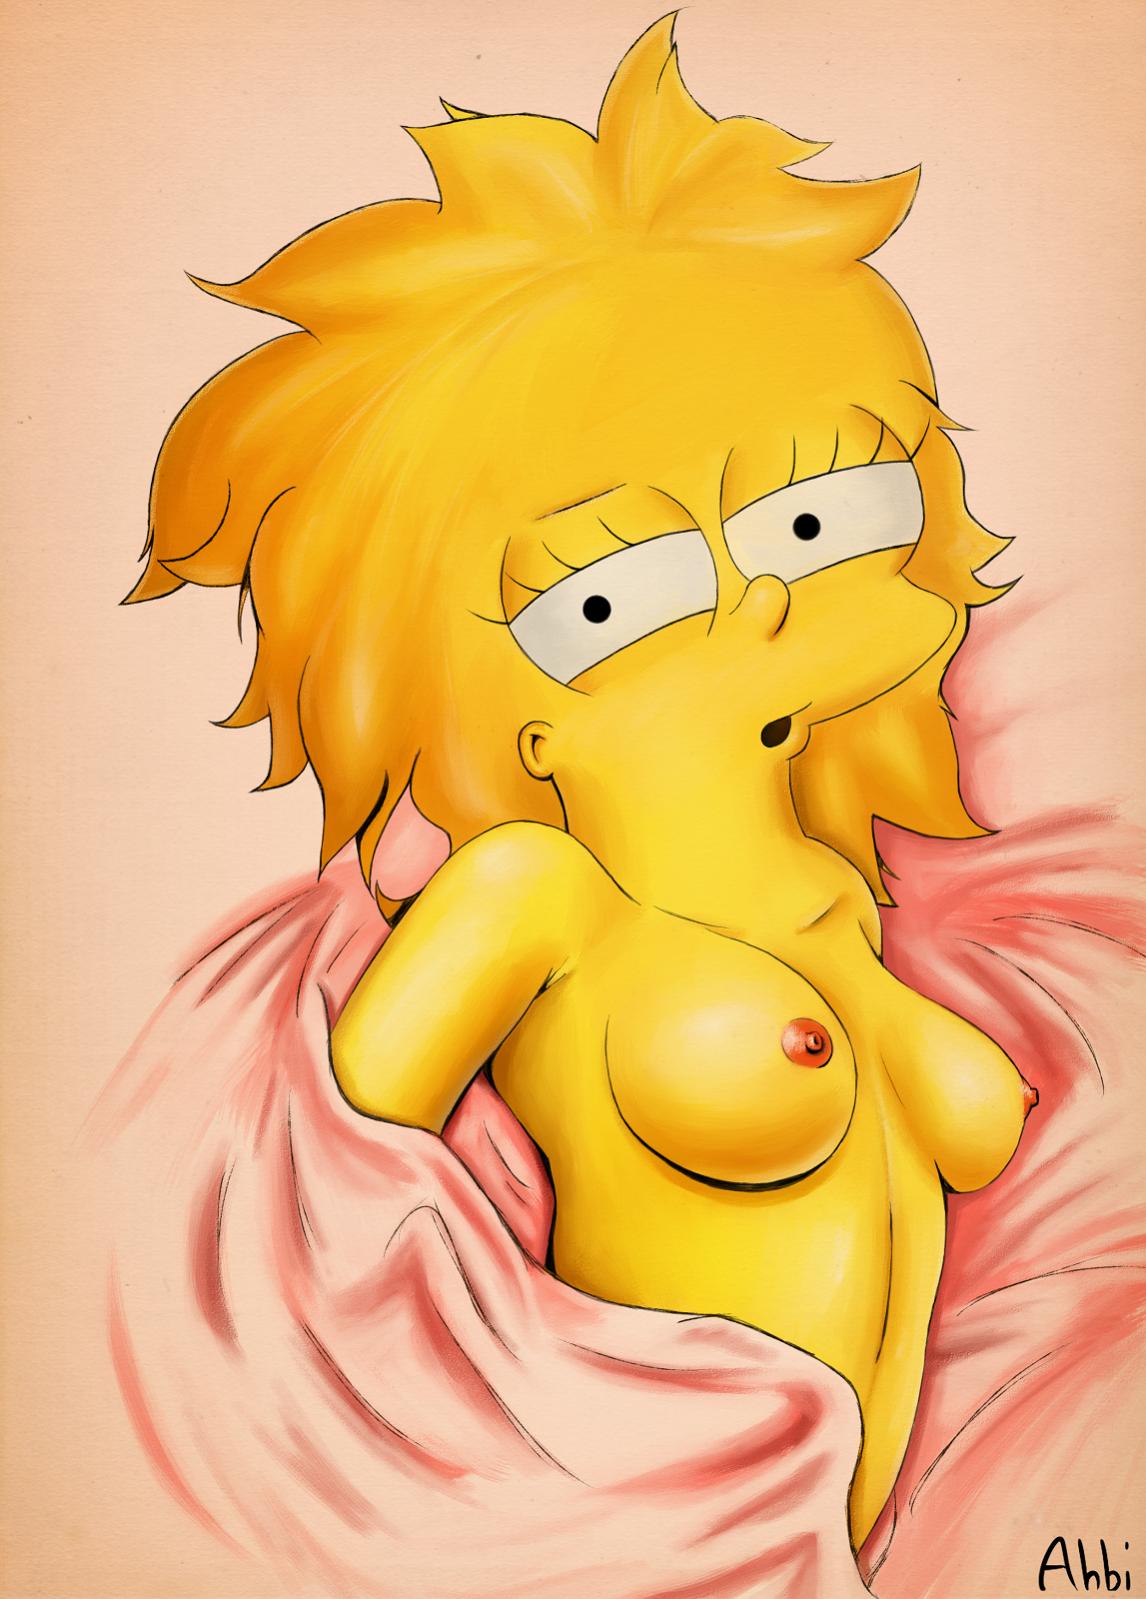 Pic1275113 Ahbihamo Lisa Simpson The Simpsons Simpsons Adult Comics